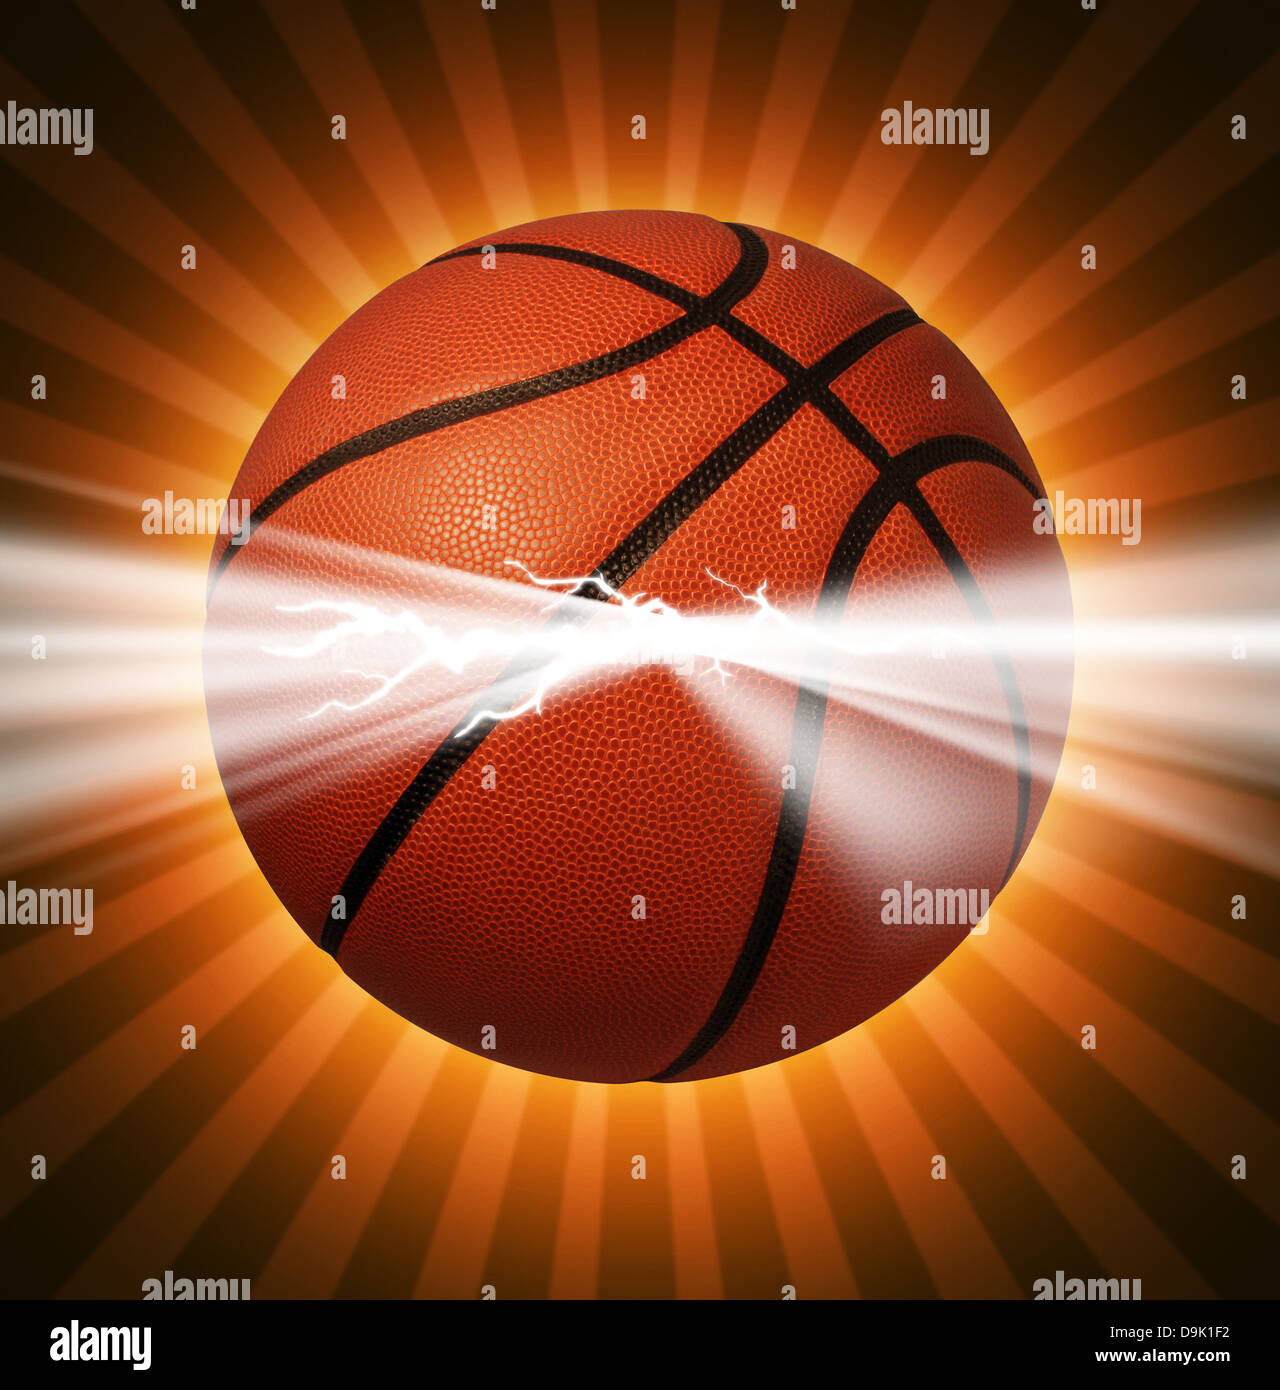 Puissance de basket-ball que l'énergie de lumière éclatant de la balle comme un symbole de l'équipe de sports extrêmes de jeu pour des championnats ou tournois. Banque D'Images